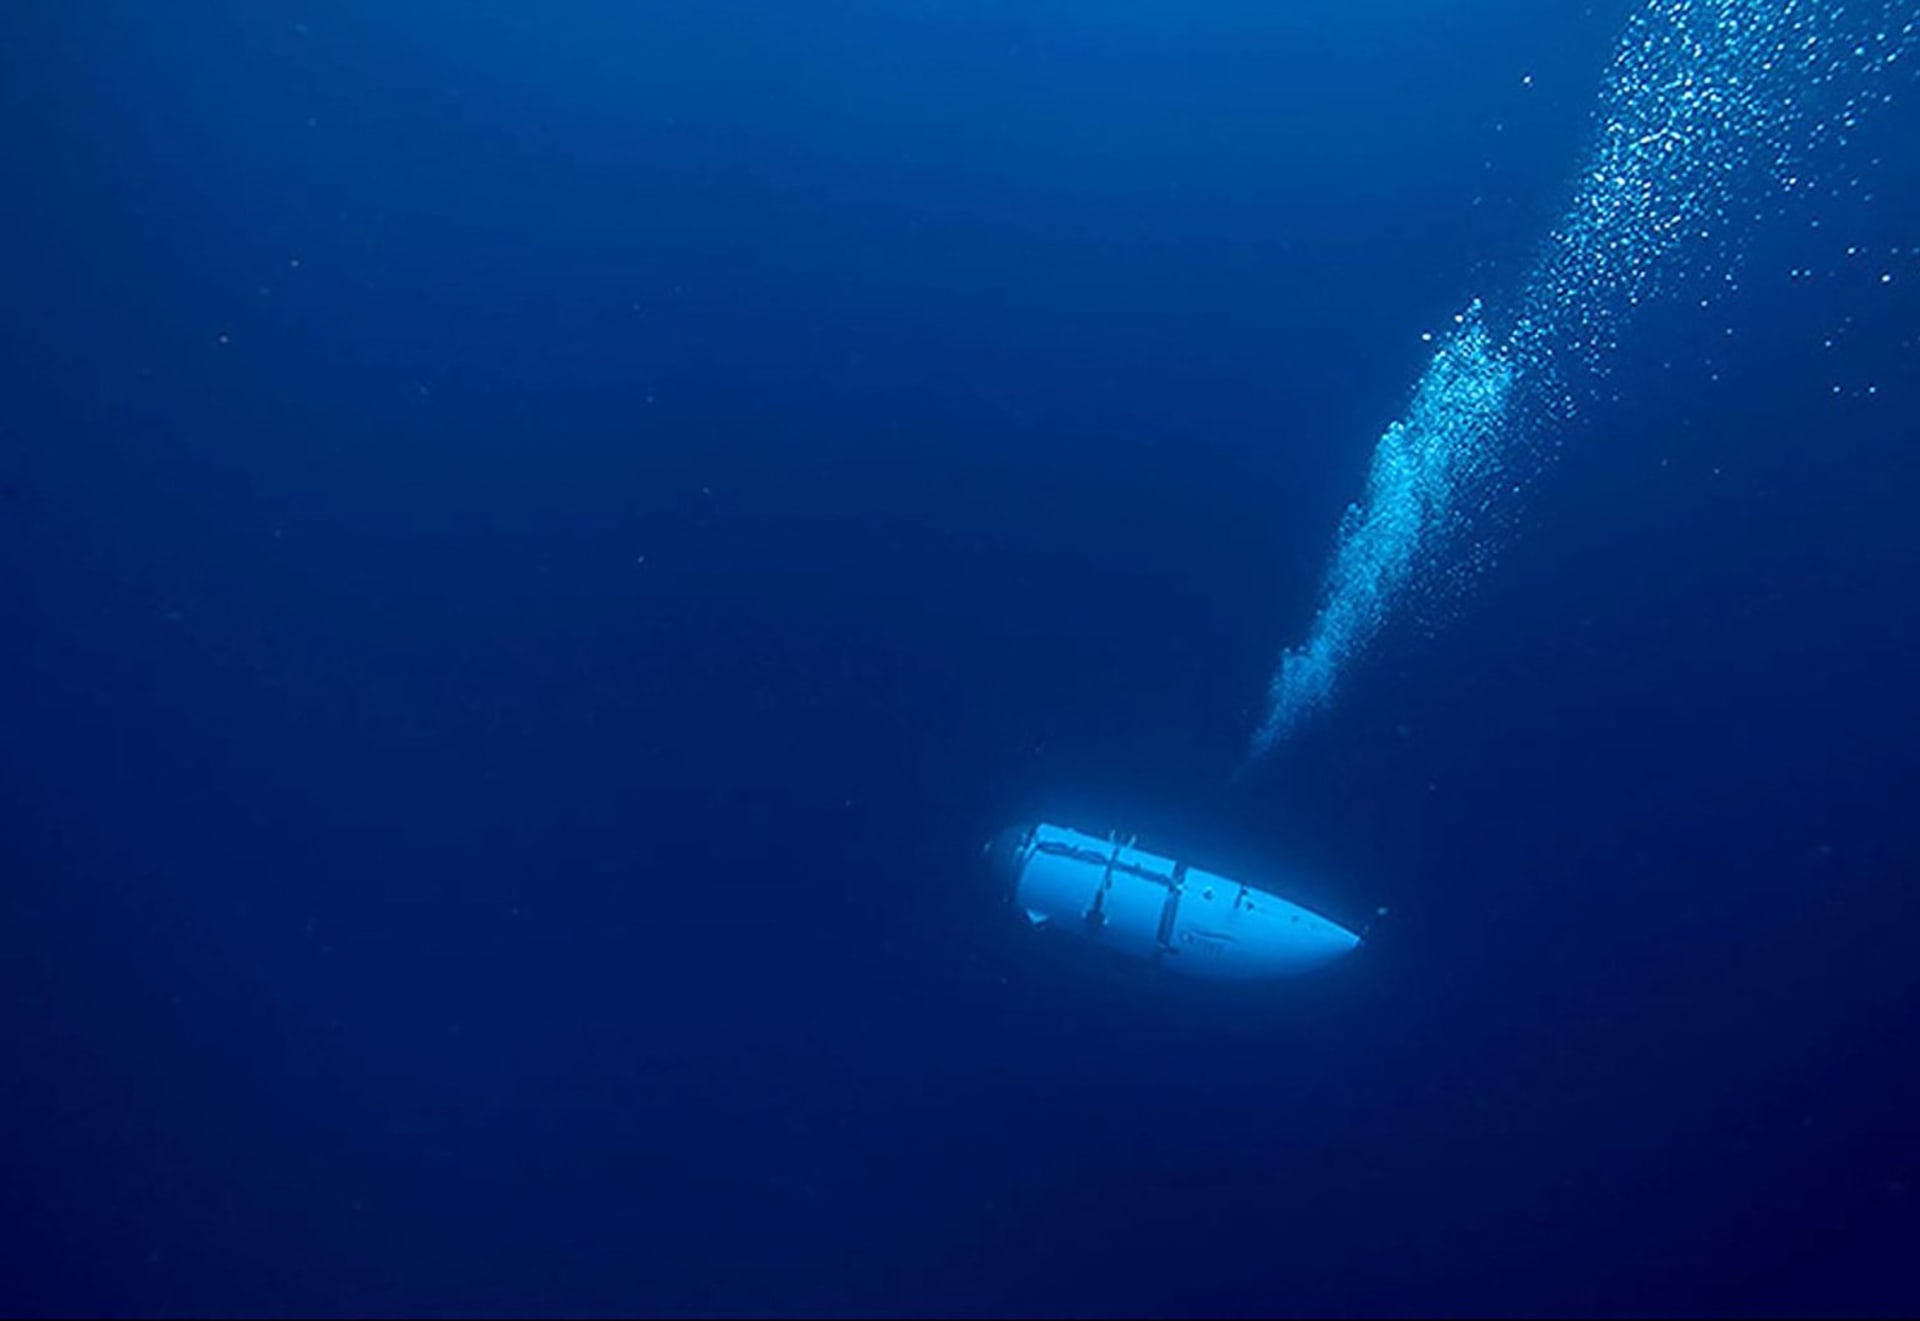 Nezvěstná ponorka Titan společnosti OceanGate Expeditions se stále pohřešuje.